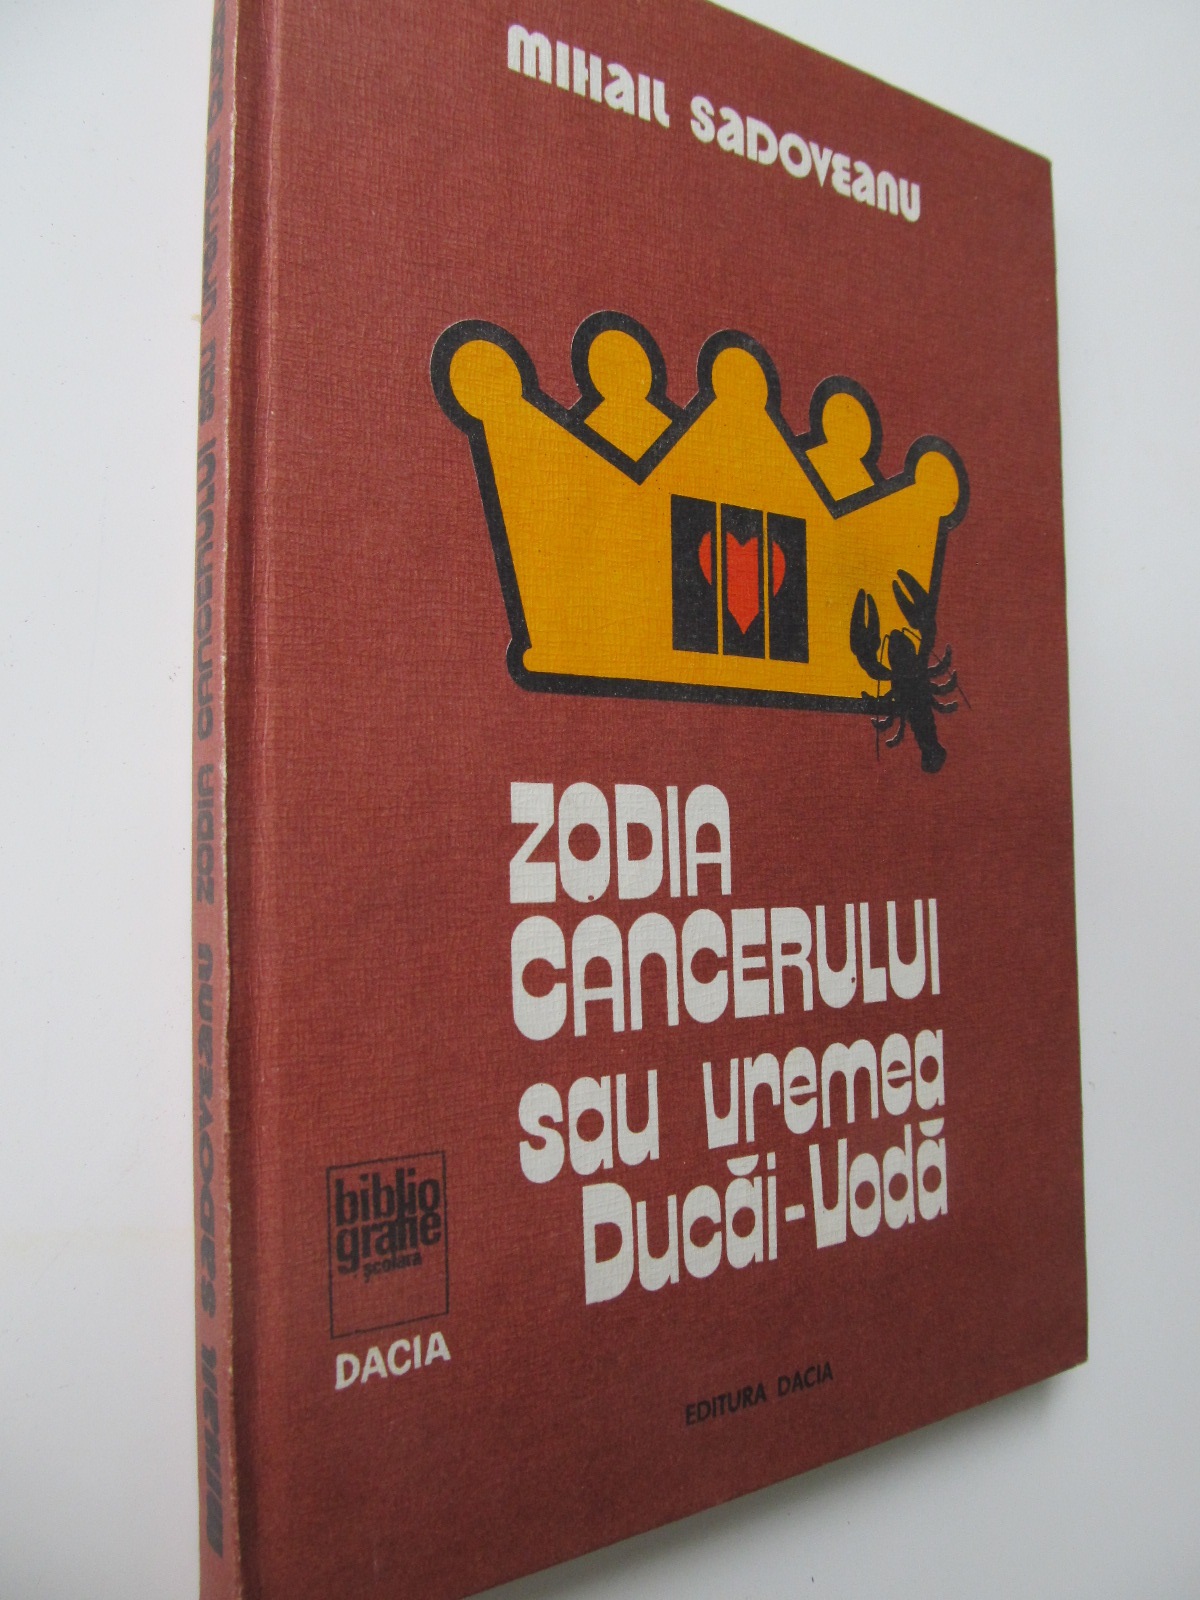 Zodia Cancerului sau vremea Ducai Voda - Mihail Sadoveanu | Detalii carte